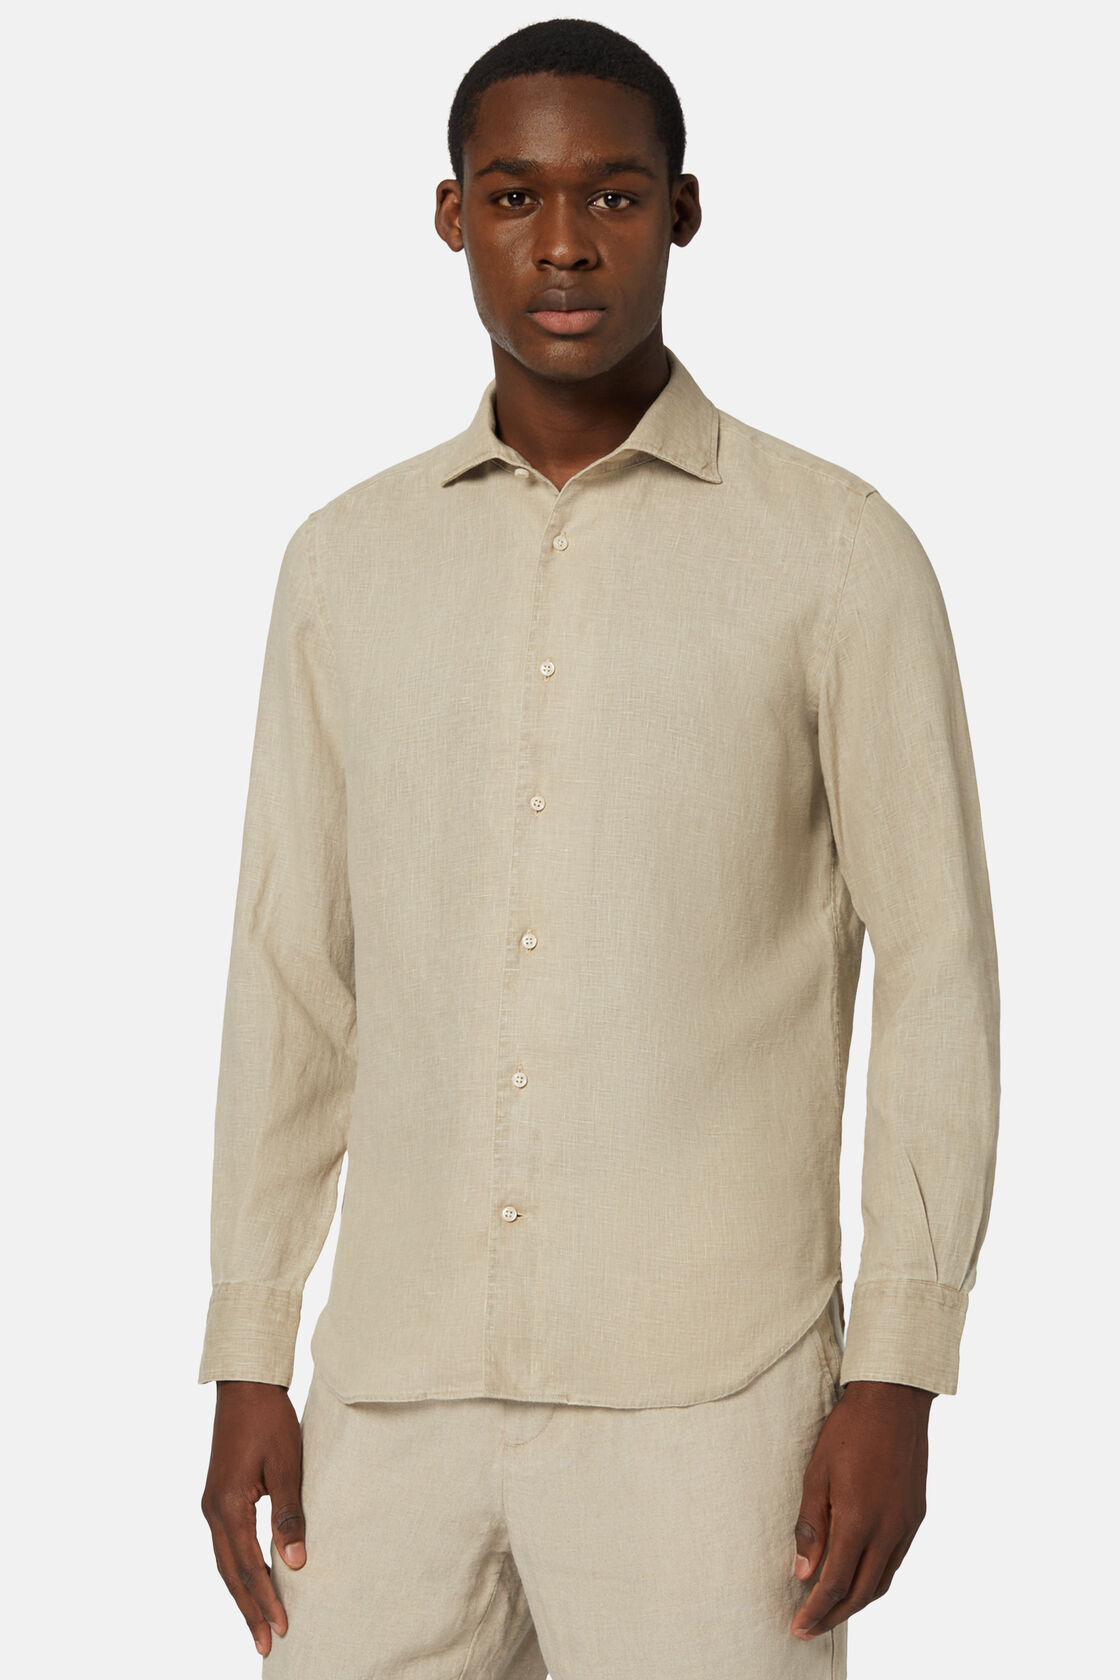 Λινό πουκάμισο με κανονική εφαρμογή, σε γκρι ανοιχτό χρώμα, Taupe, hi-res